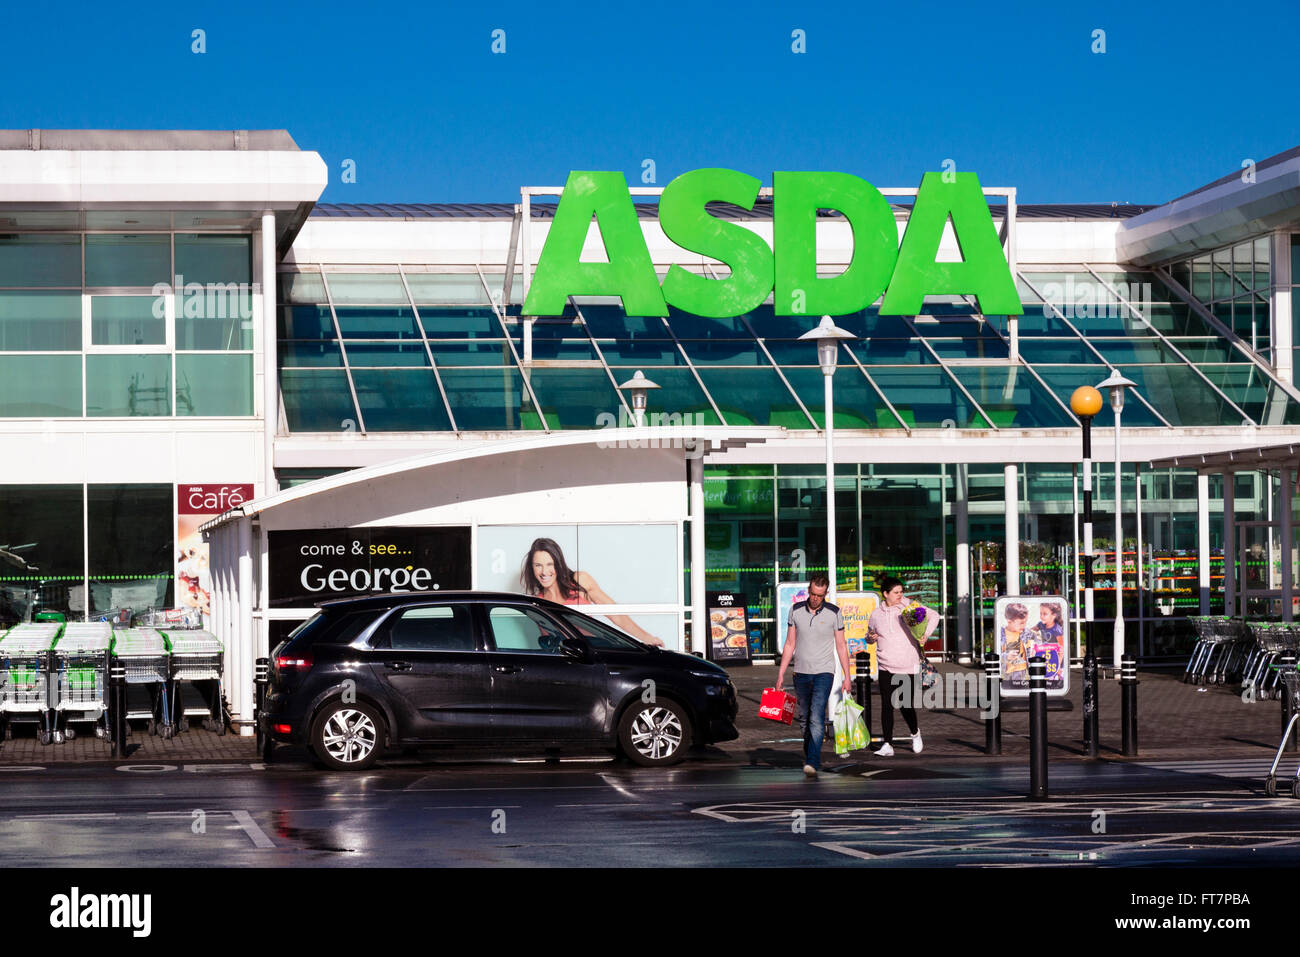 Asda supermarket, UK. Stock Photo